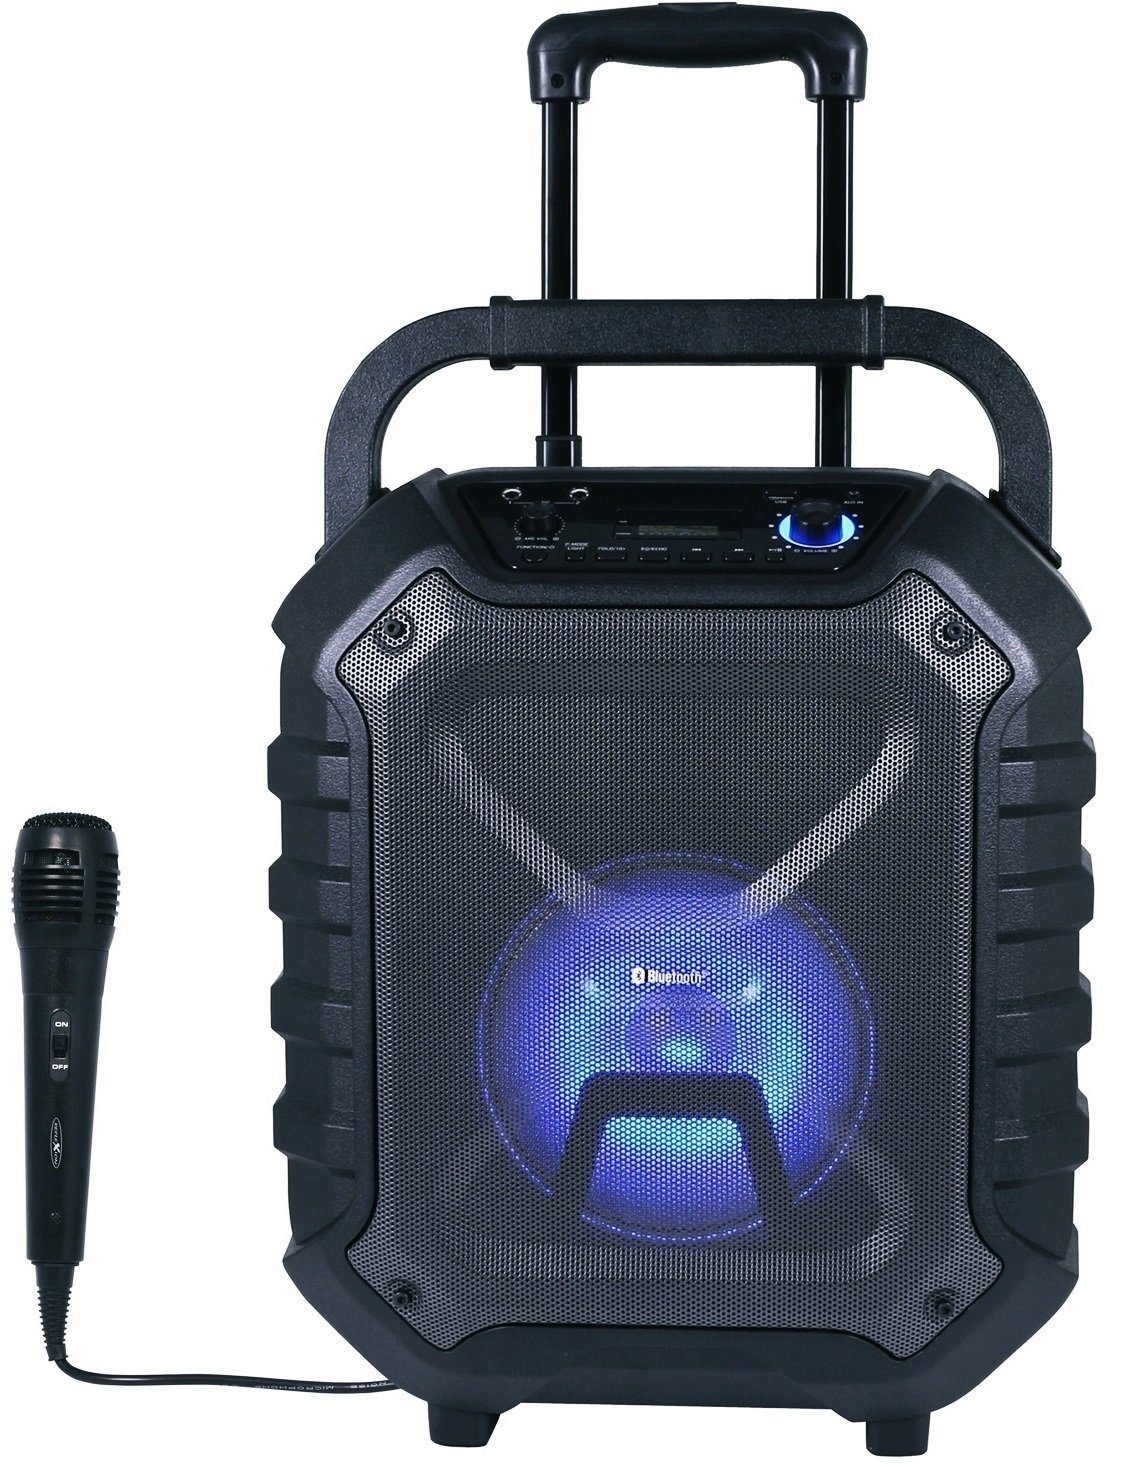 LCD Akku, und (400 und Reflexion Anzeige W, Bluetooth, USB, AUX-IN EQ-Funktion) Party-Lautsprecher DJ900BT